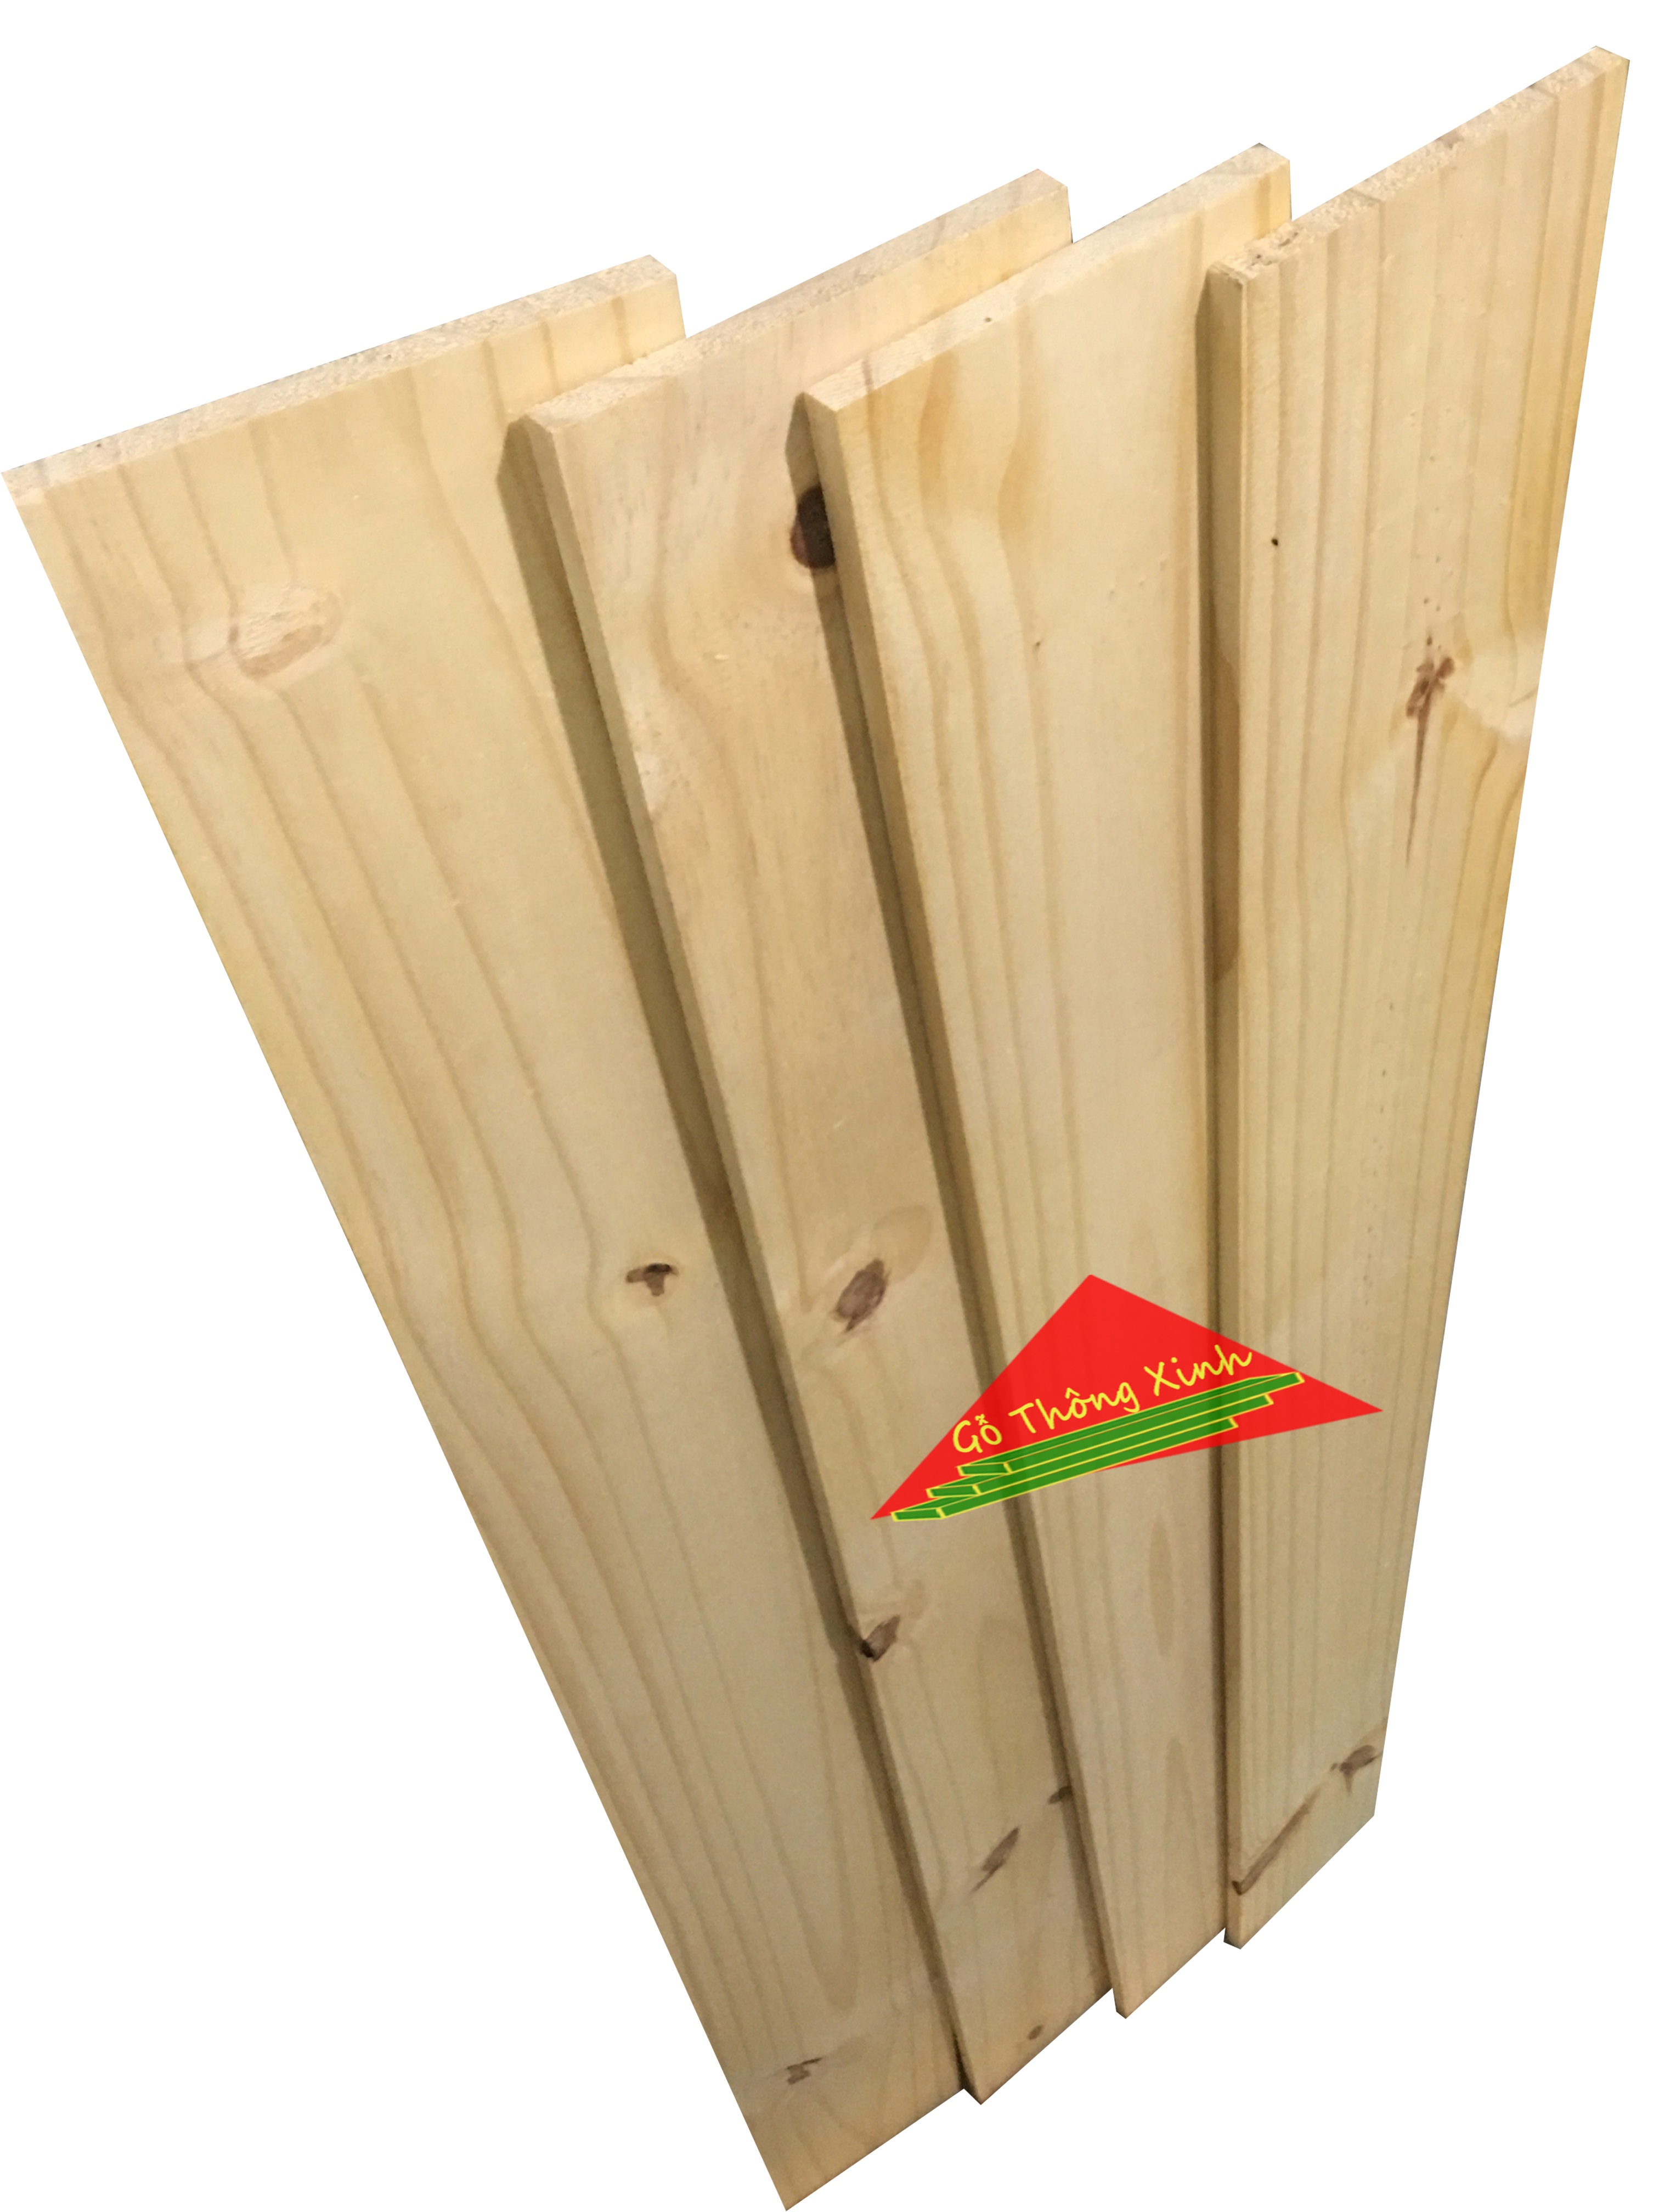 Bó 4 tấm gỗ thông mới đẹp dài 1m2, rộng 12.5cm, dày 1cm bào láng 4 mặt thích hợp DIY, trang trí, decorde...